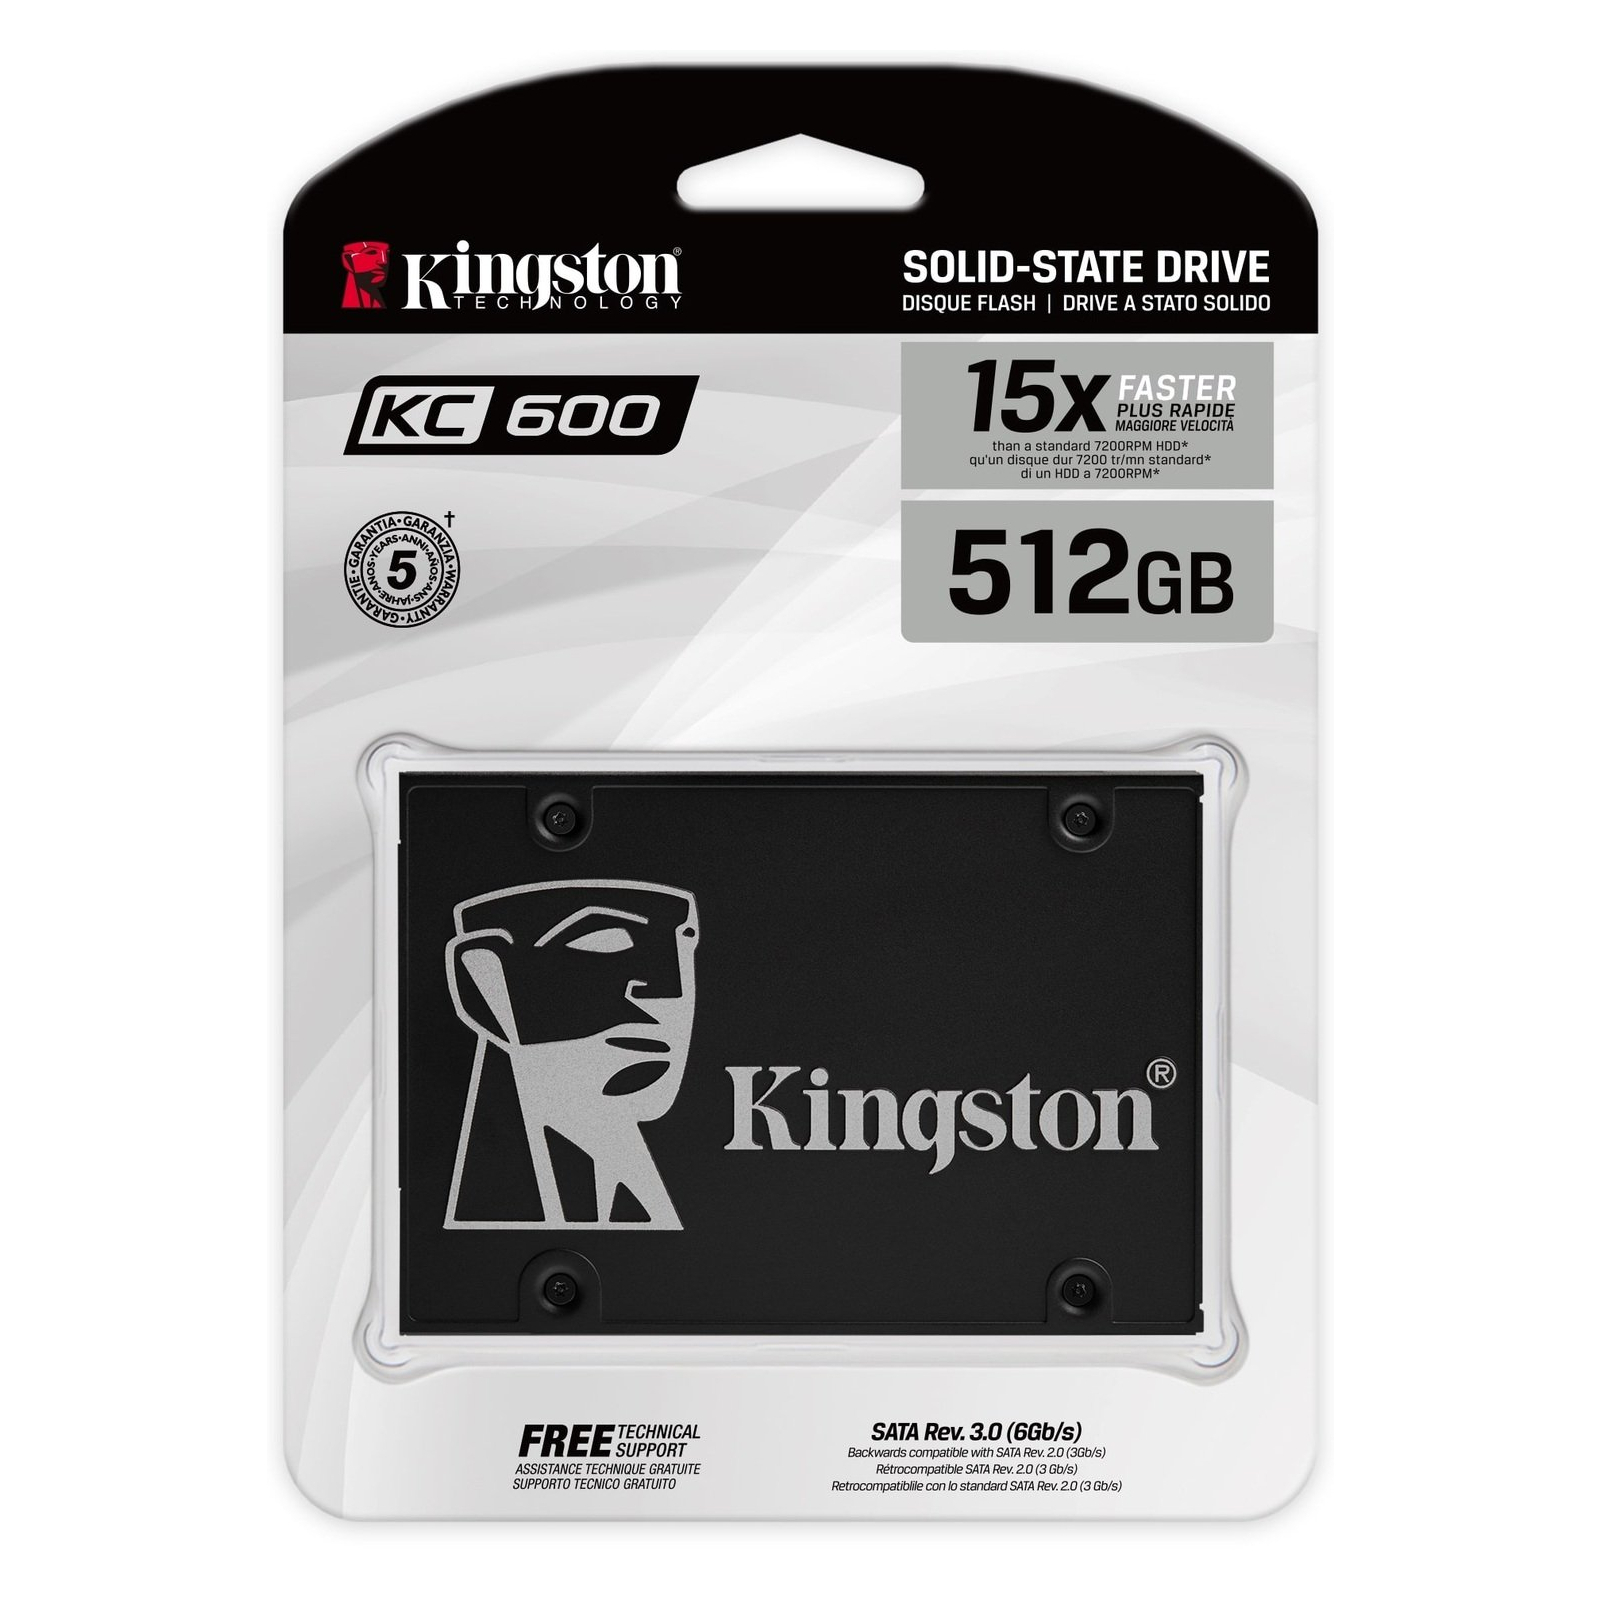 Накопичувач SSD 2.5" 256GB Kingston (SKC600/256G) зображення 3